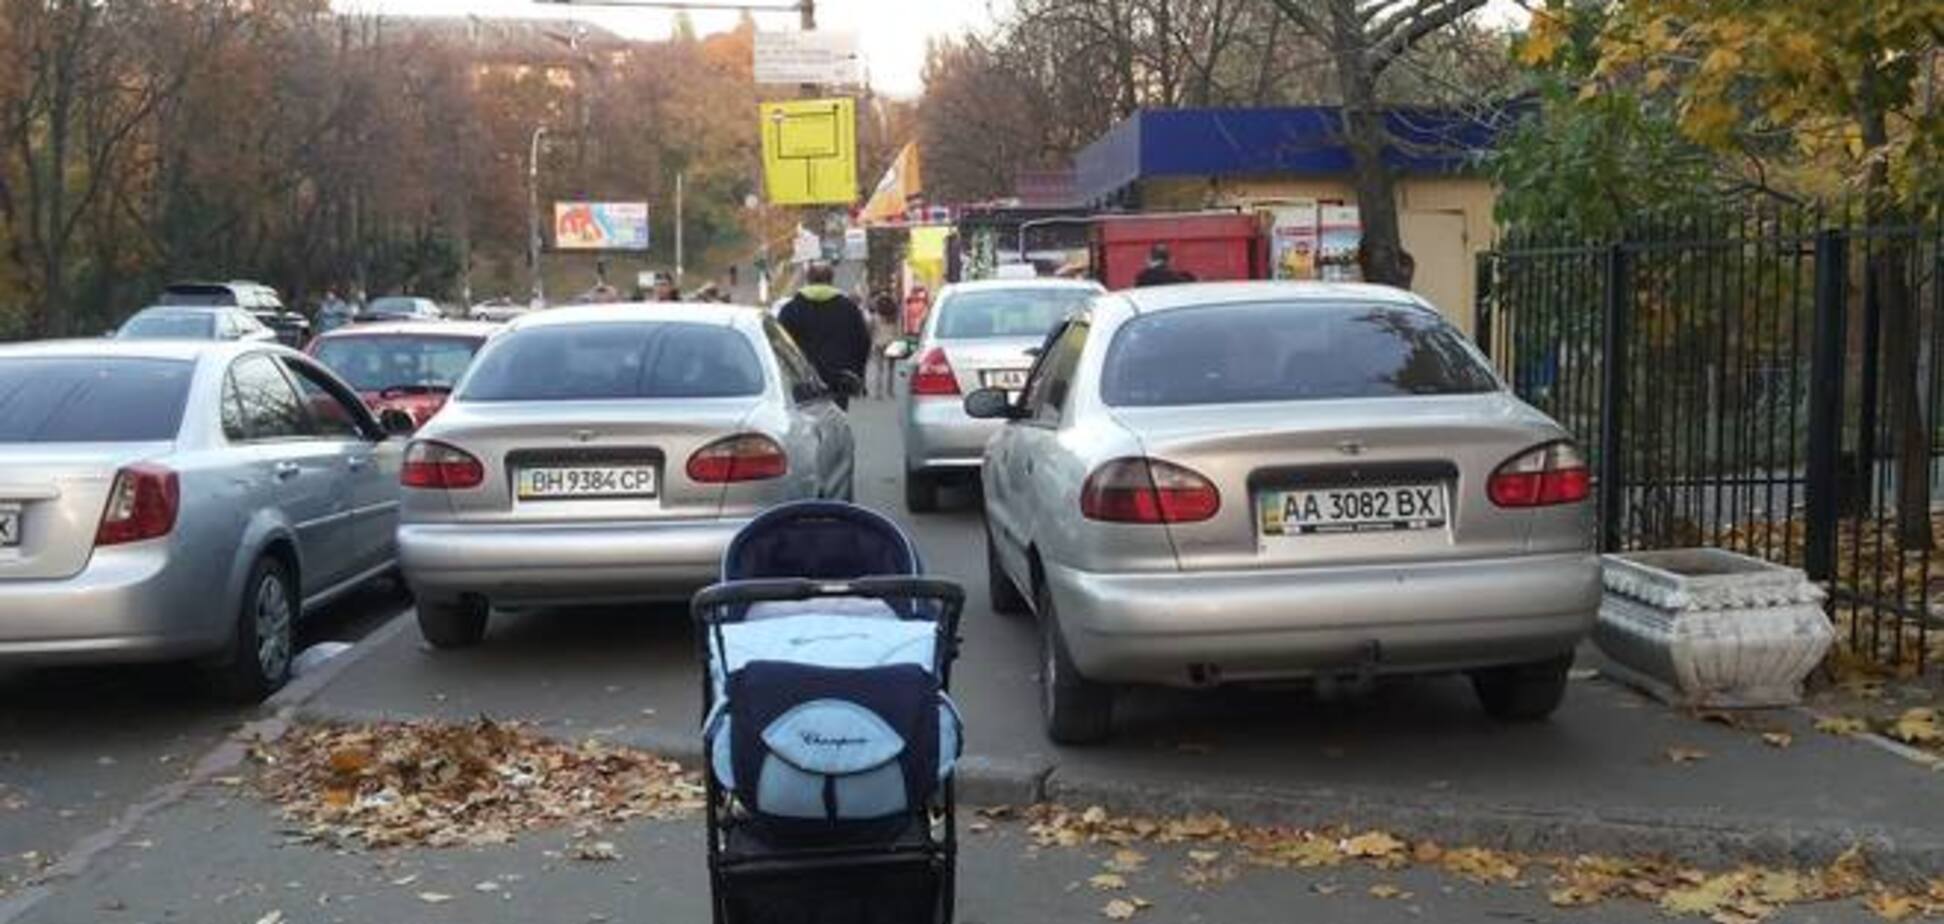 Как украинцы борются с нарушителями парковки: мусор на авто и Георгиевские ленты